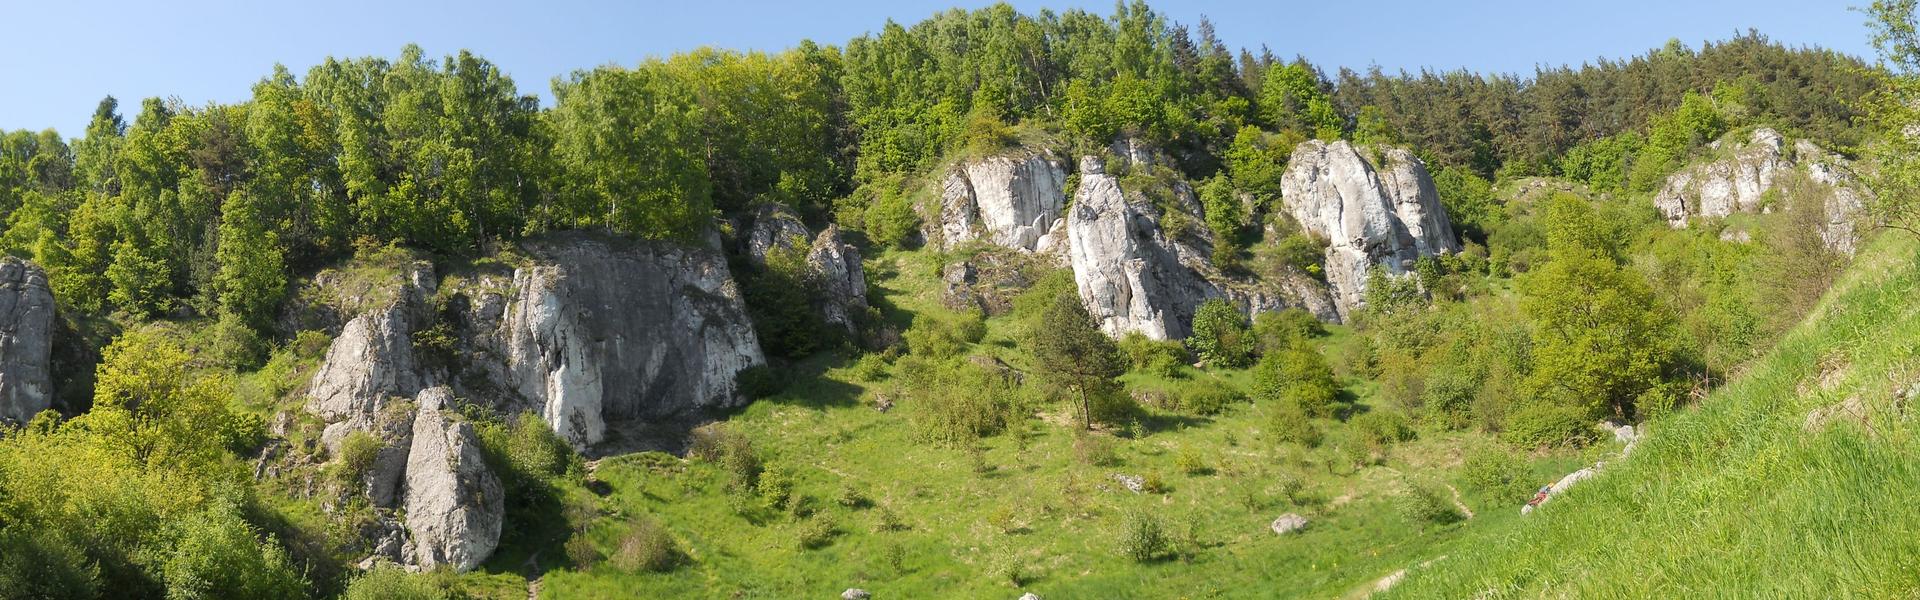 Wapienne białe skały w dolinie.